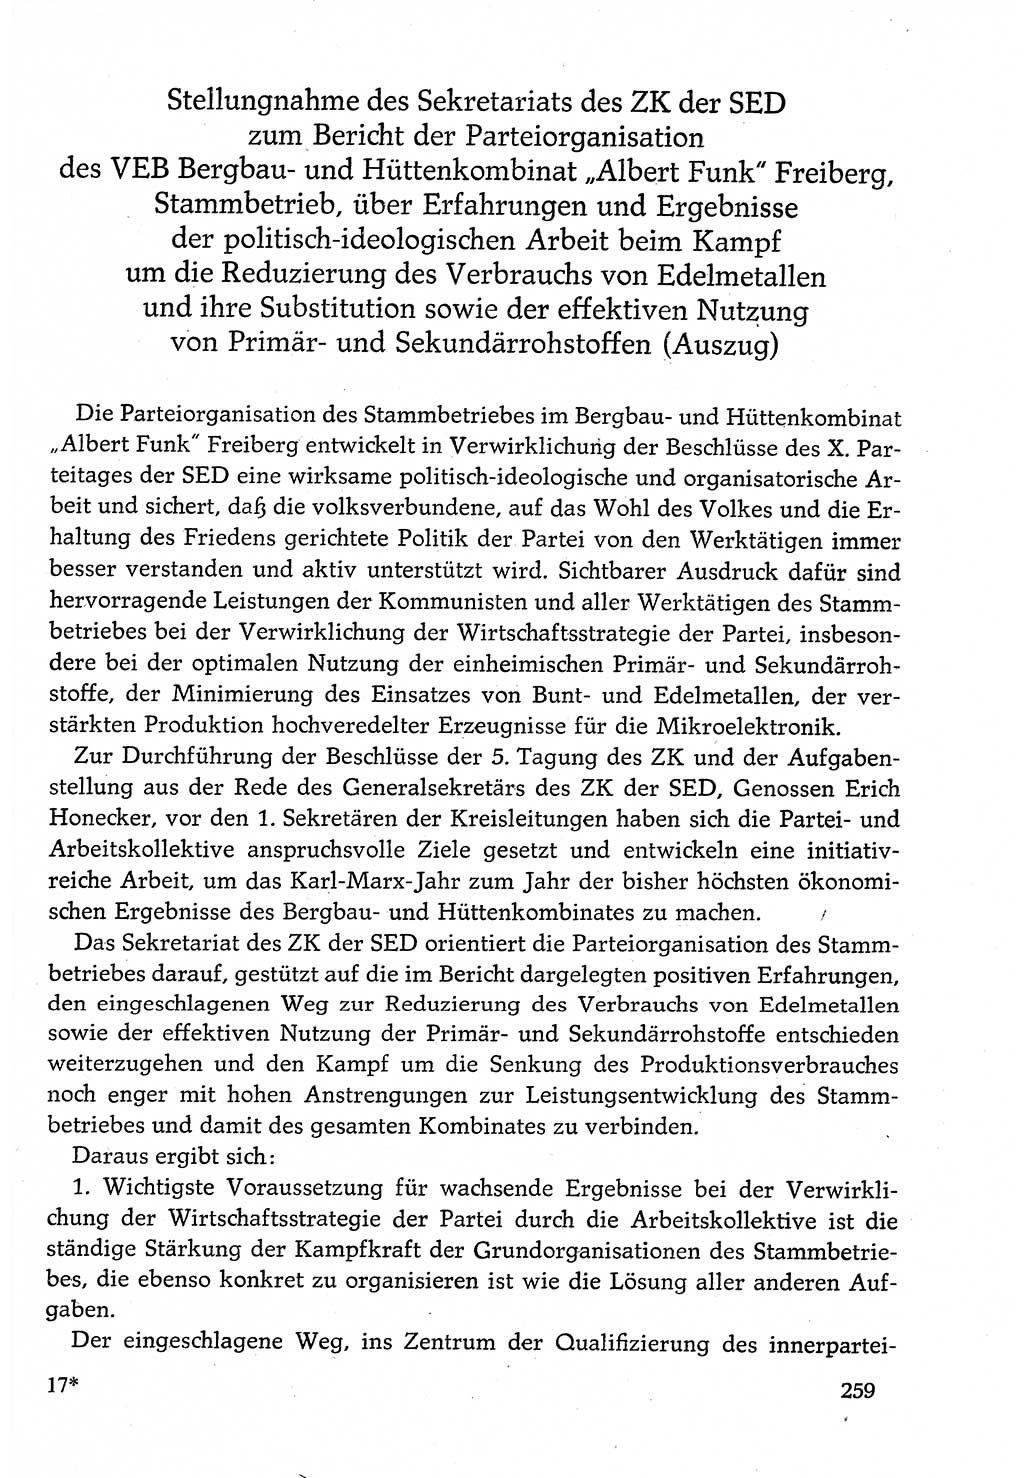 Dokumente der Sozialistischen Einheitspartei Deutschlands (SED) [Deutsche Demokratische Republik (DDR)] 1982-1983, Seite 259 (Dok. SED DDR 1982-1983, S. 259)